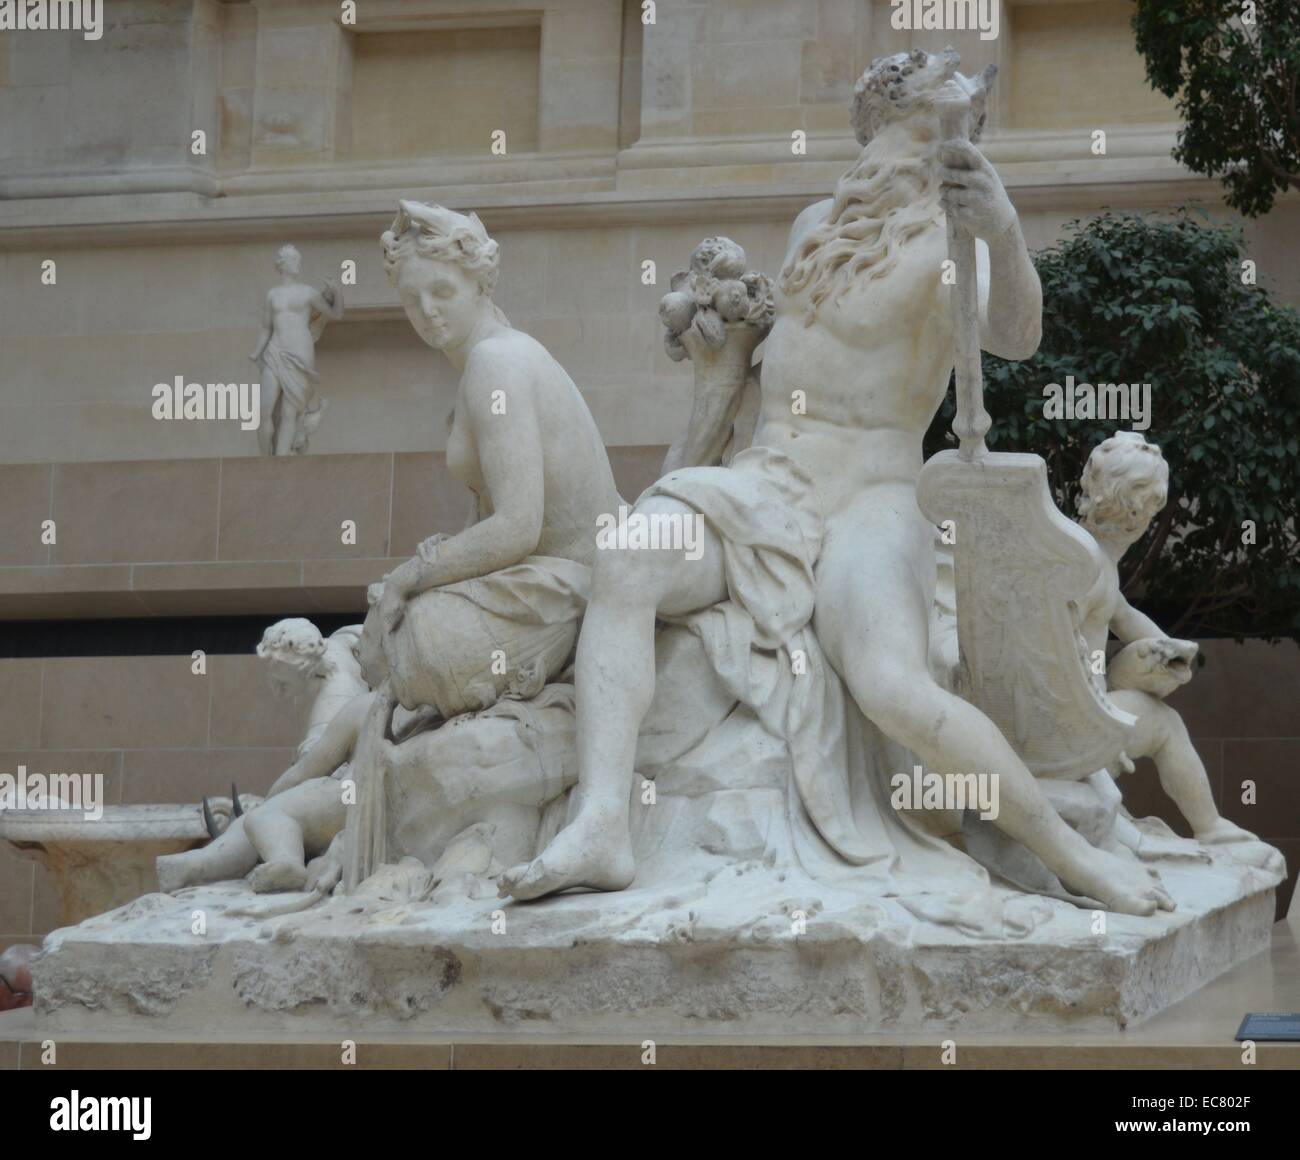 Statua in marmo della Senna e Marna da Nicolas Coustou (1658-1733), uno scultore francese il cui stile è stato basato sull'academic grande maniera di scultori. Risalenti al XVII secolo. Foto Stock